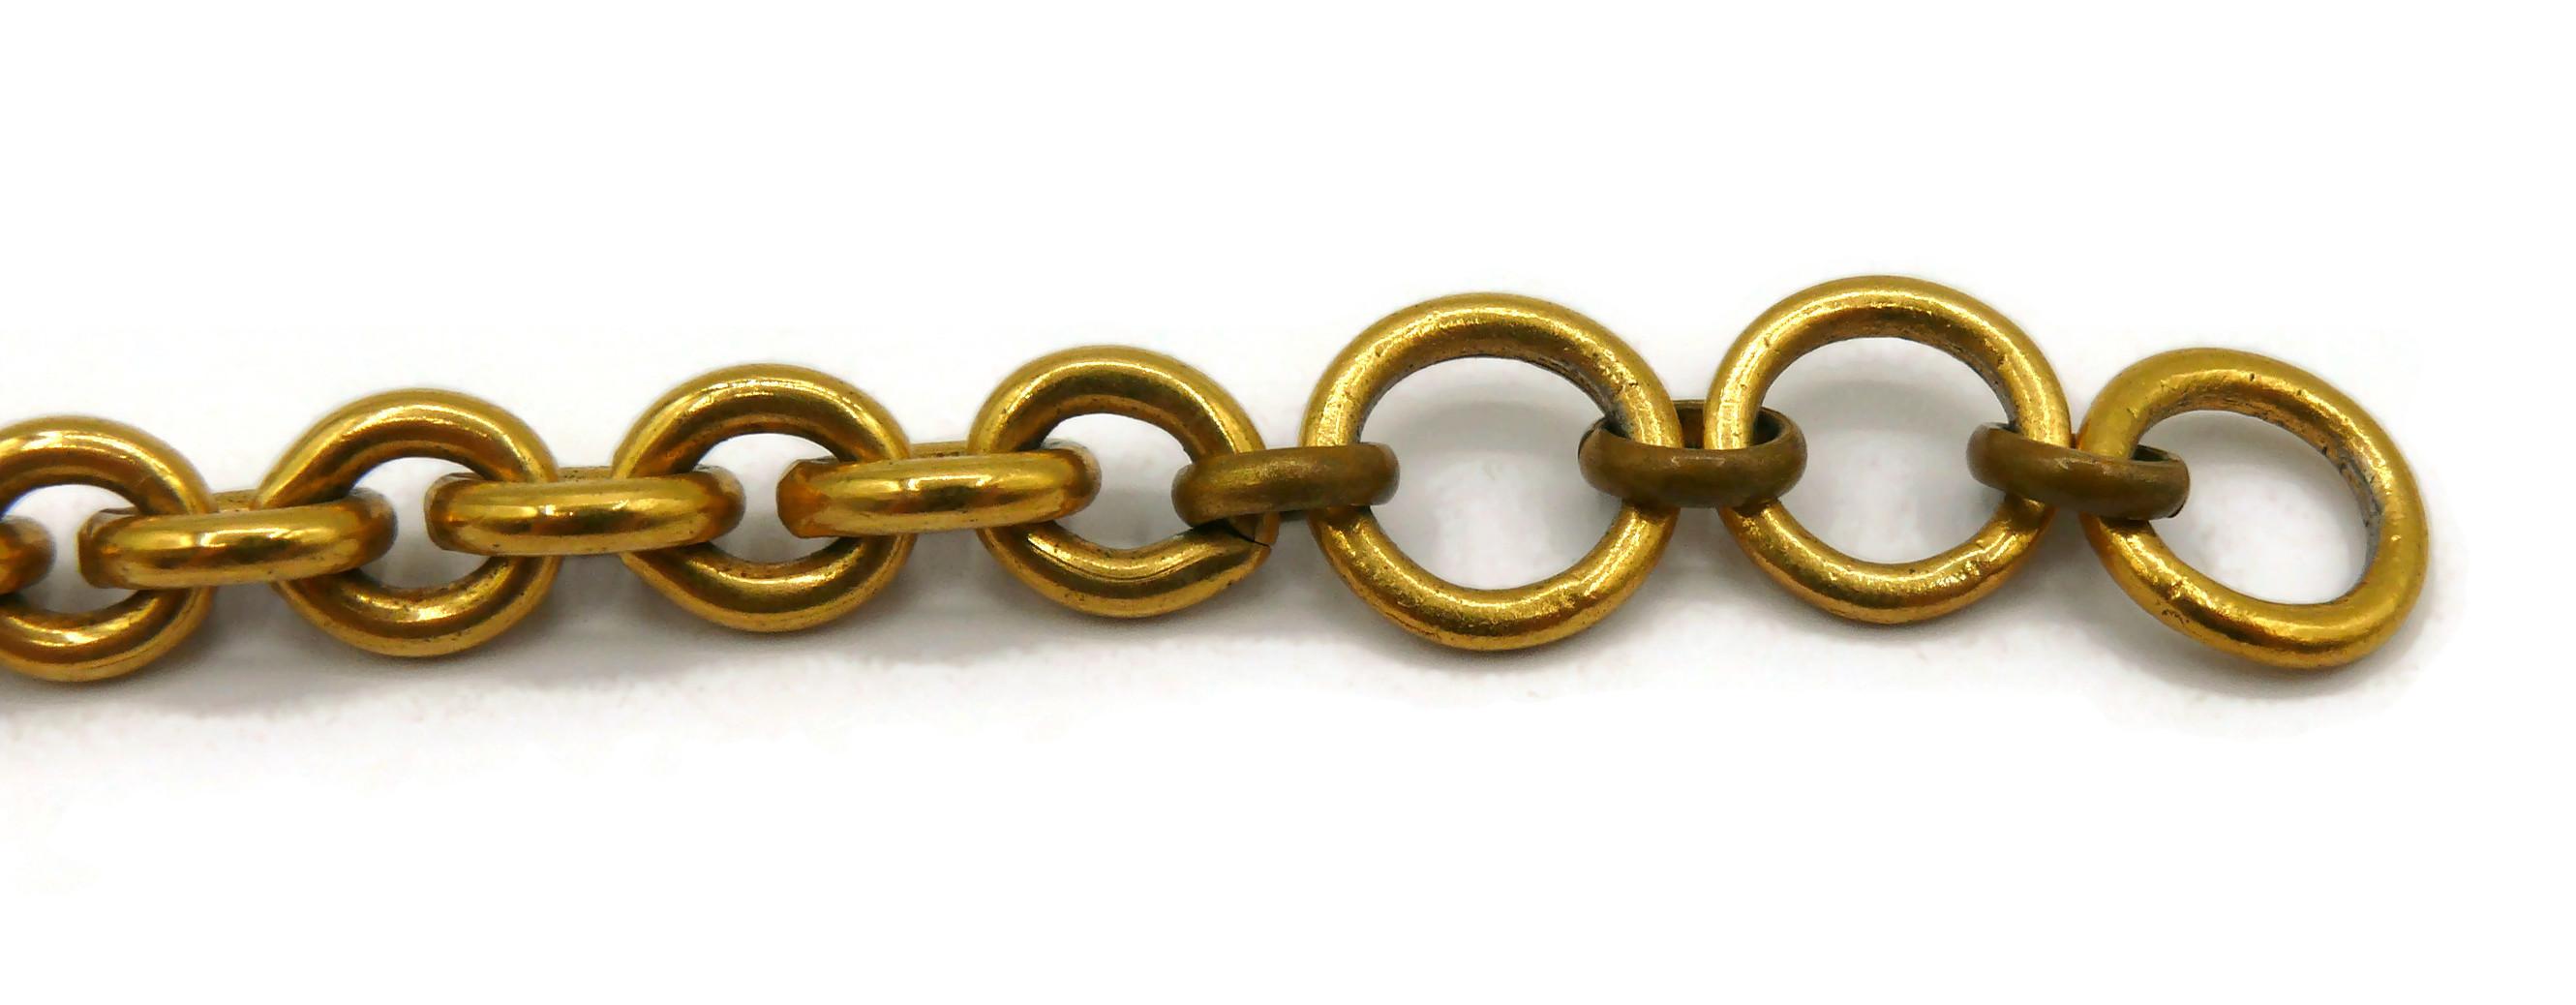 CHRISTIAN LACROIX Vintage Enamel Anchor Pendant Necklace For Sale 2